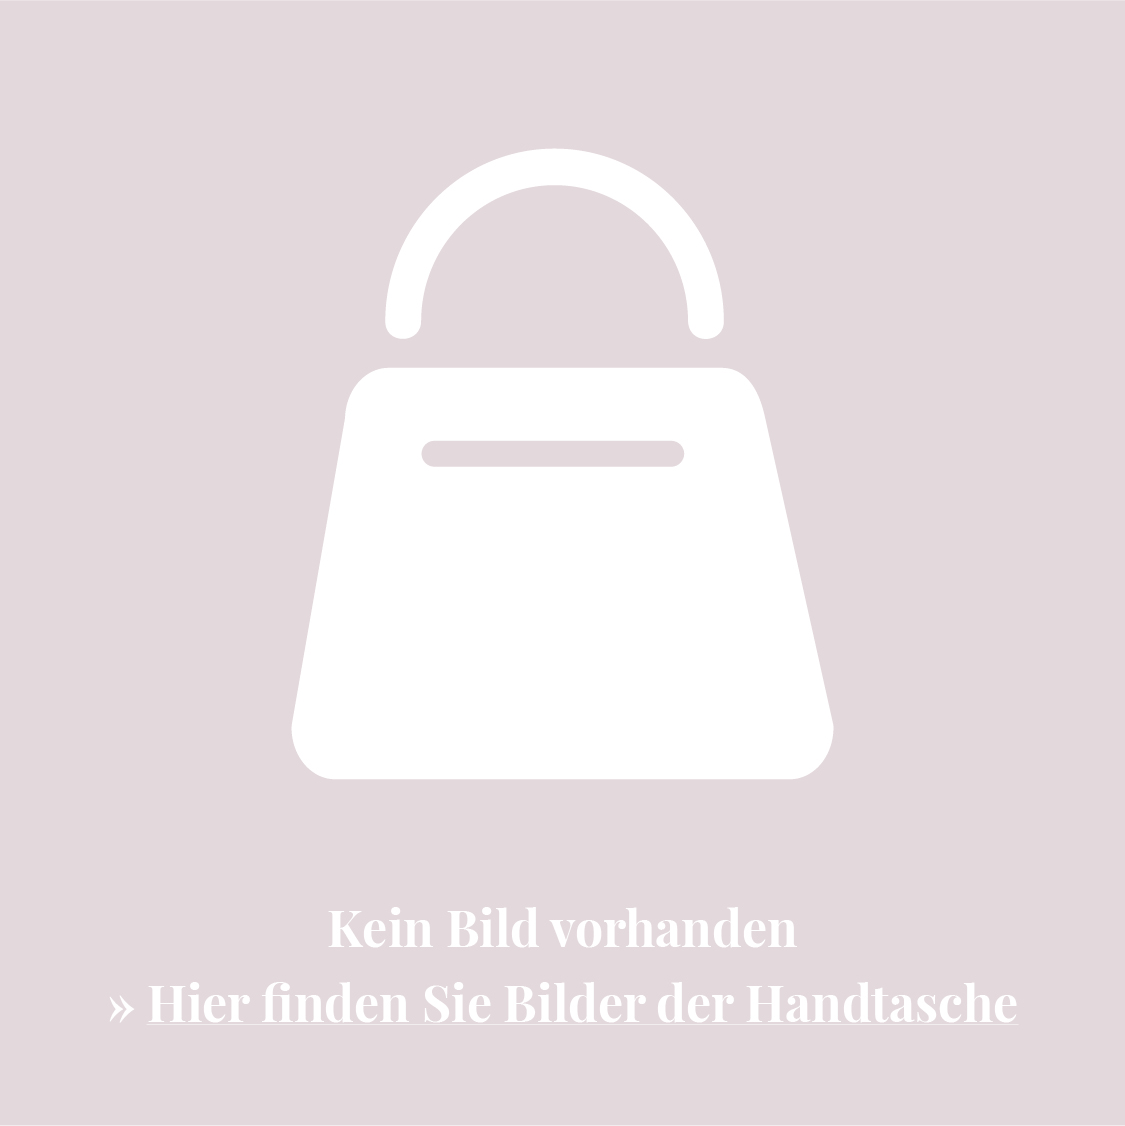 Fendi Pre-Owned Pre-owned Handtasche mit Zucca Mamma-Muster - Braun von Fendi